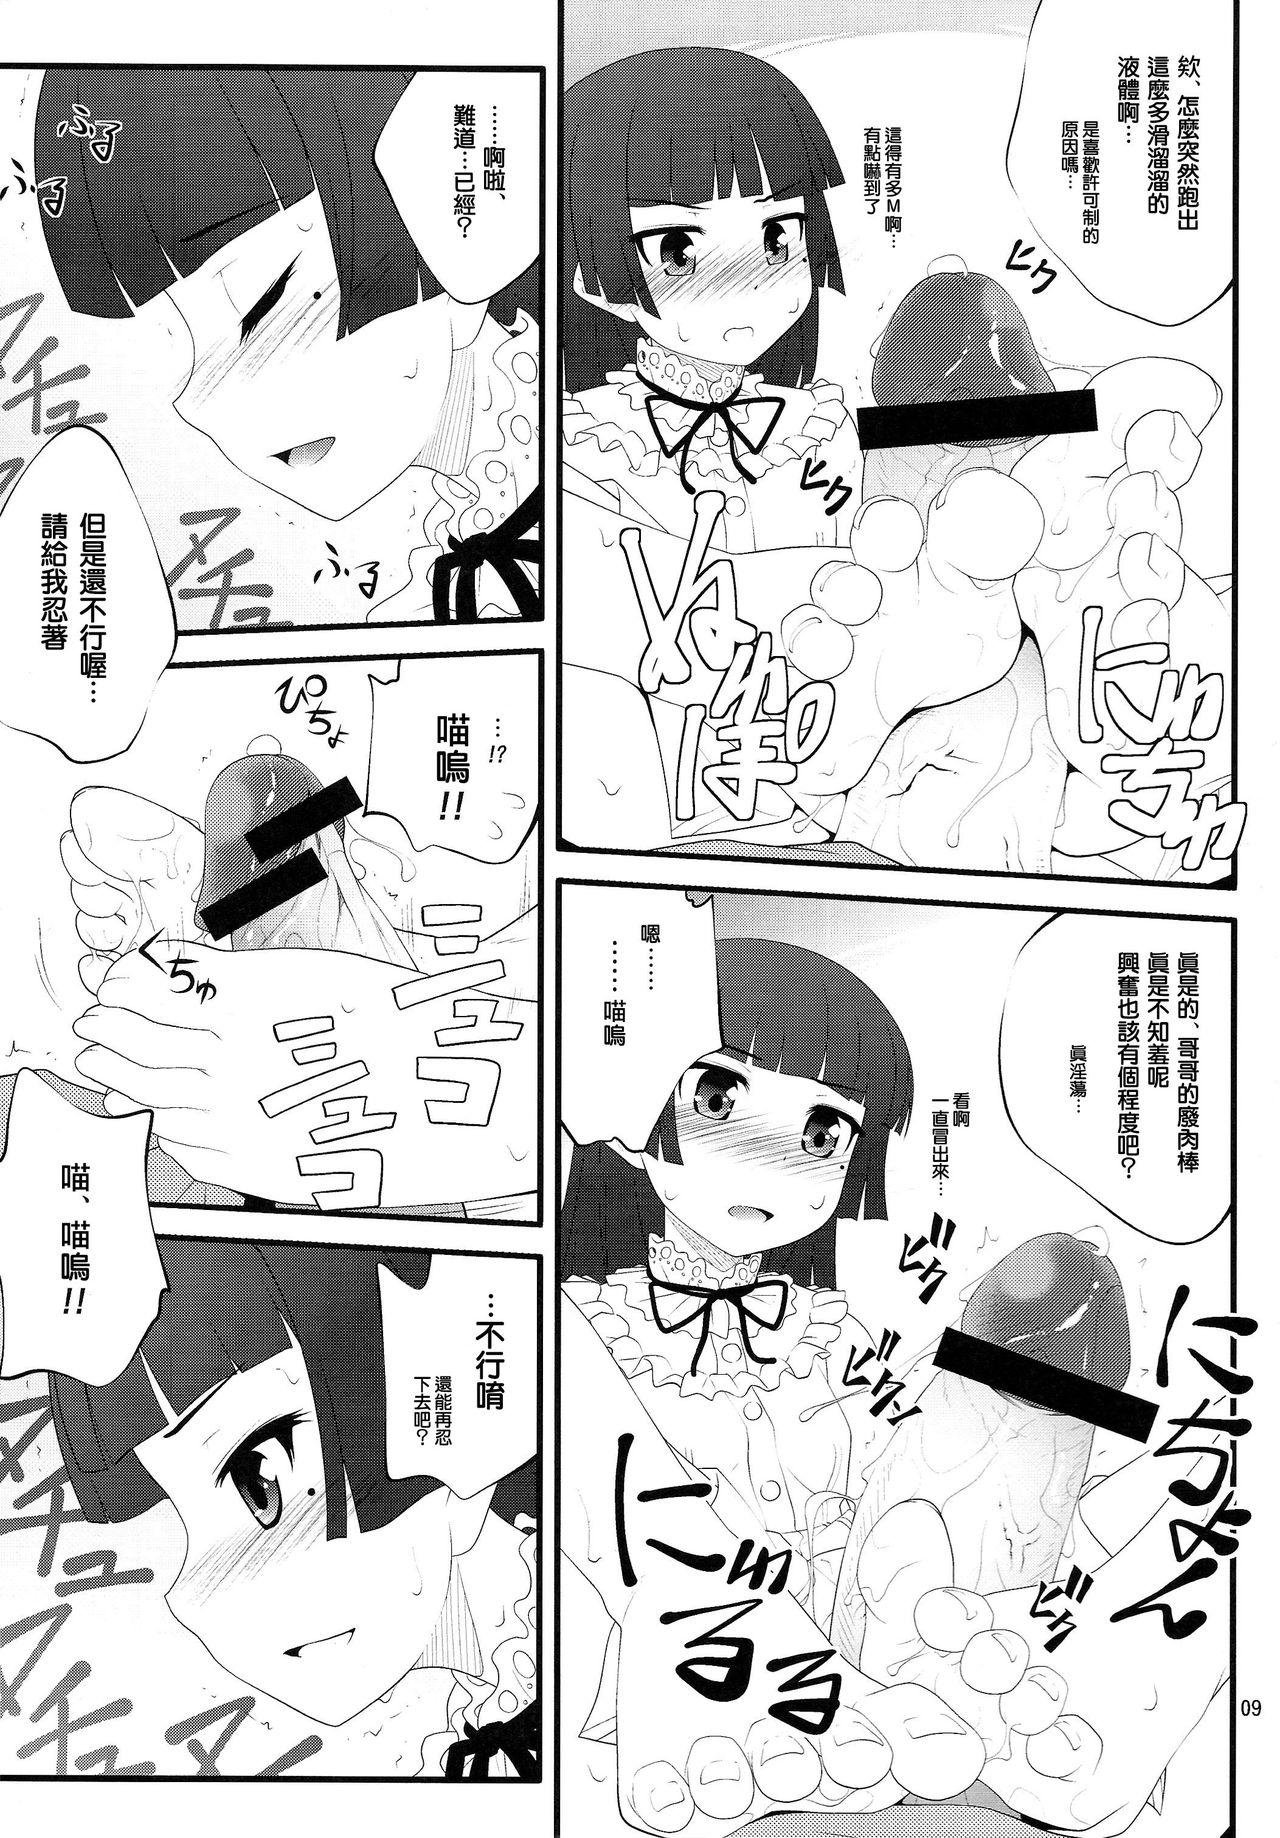 Petite Nii-san, Ashi Monde Choudai After - Ore no imouto ga konna ni kawaii wake ga nai Best Blowjob Ever - Page 9